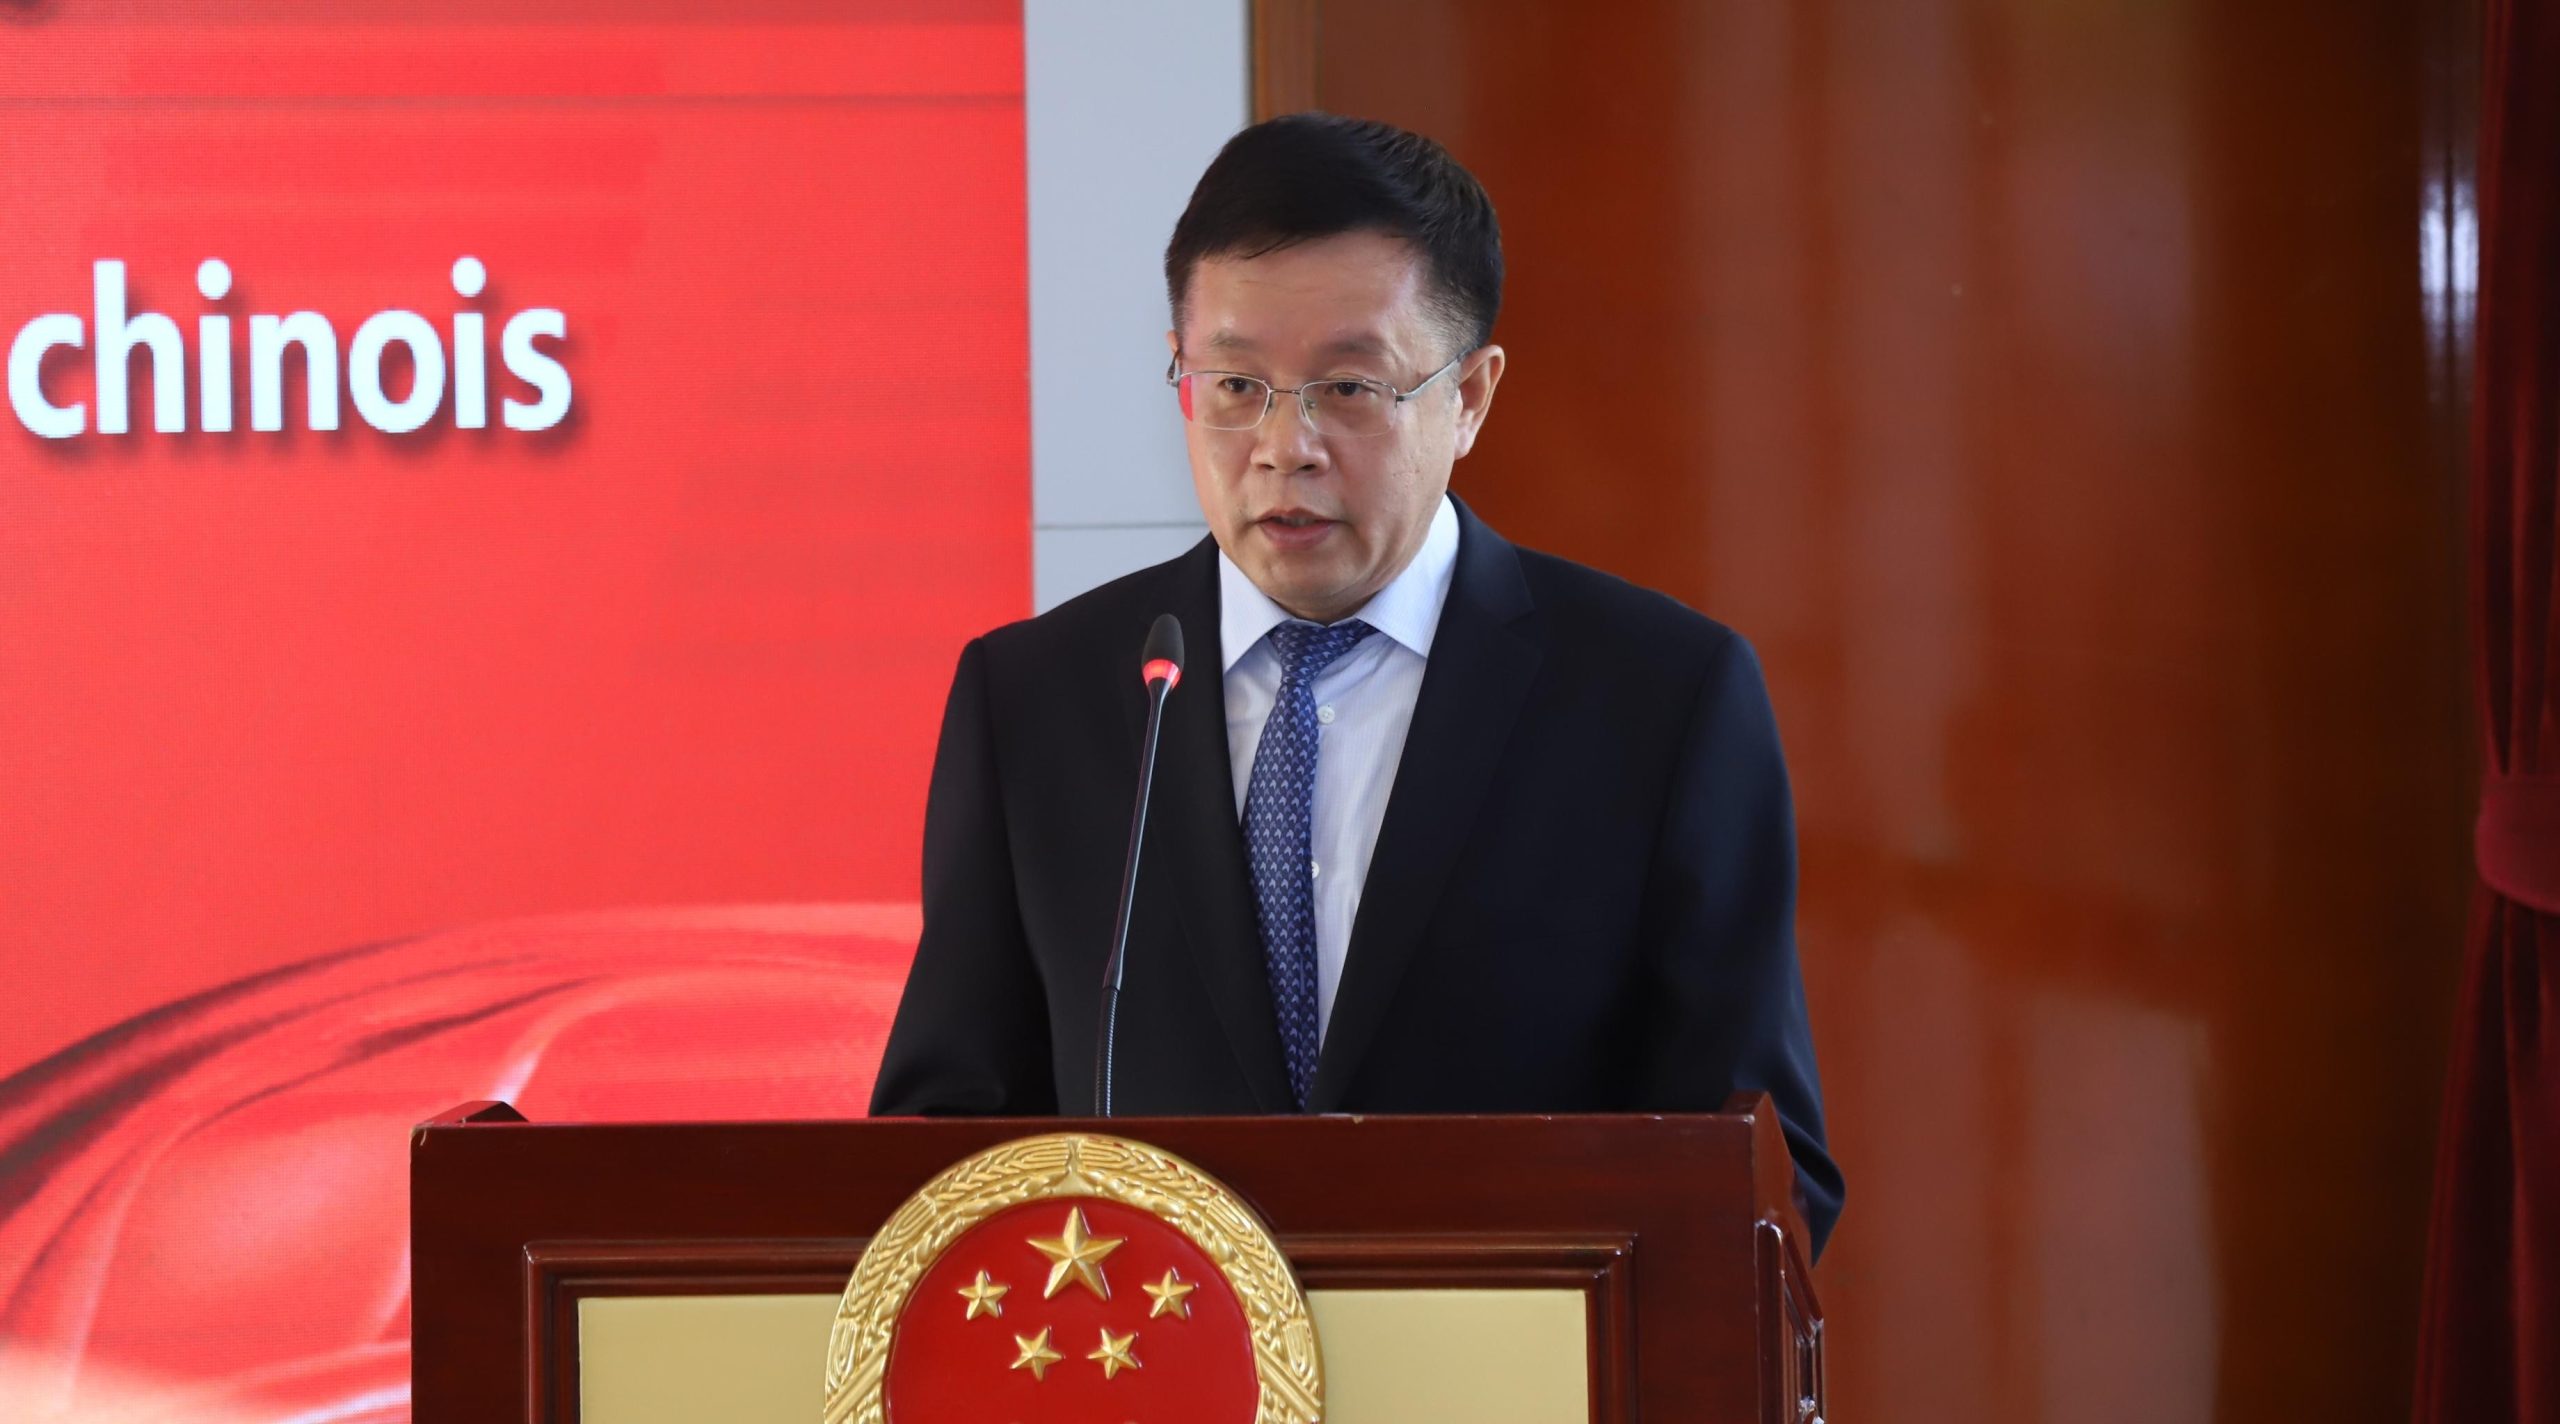 سفير الصين بالمغرب: جاذبية المغرب للصينيين تتزايد يوما بعد يوم